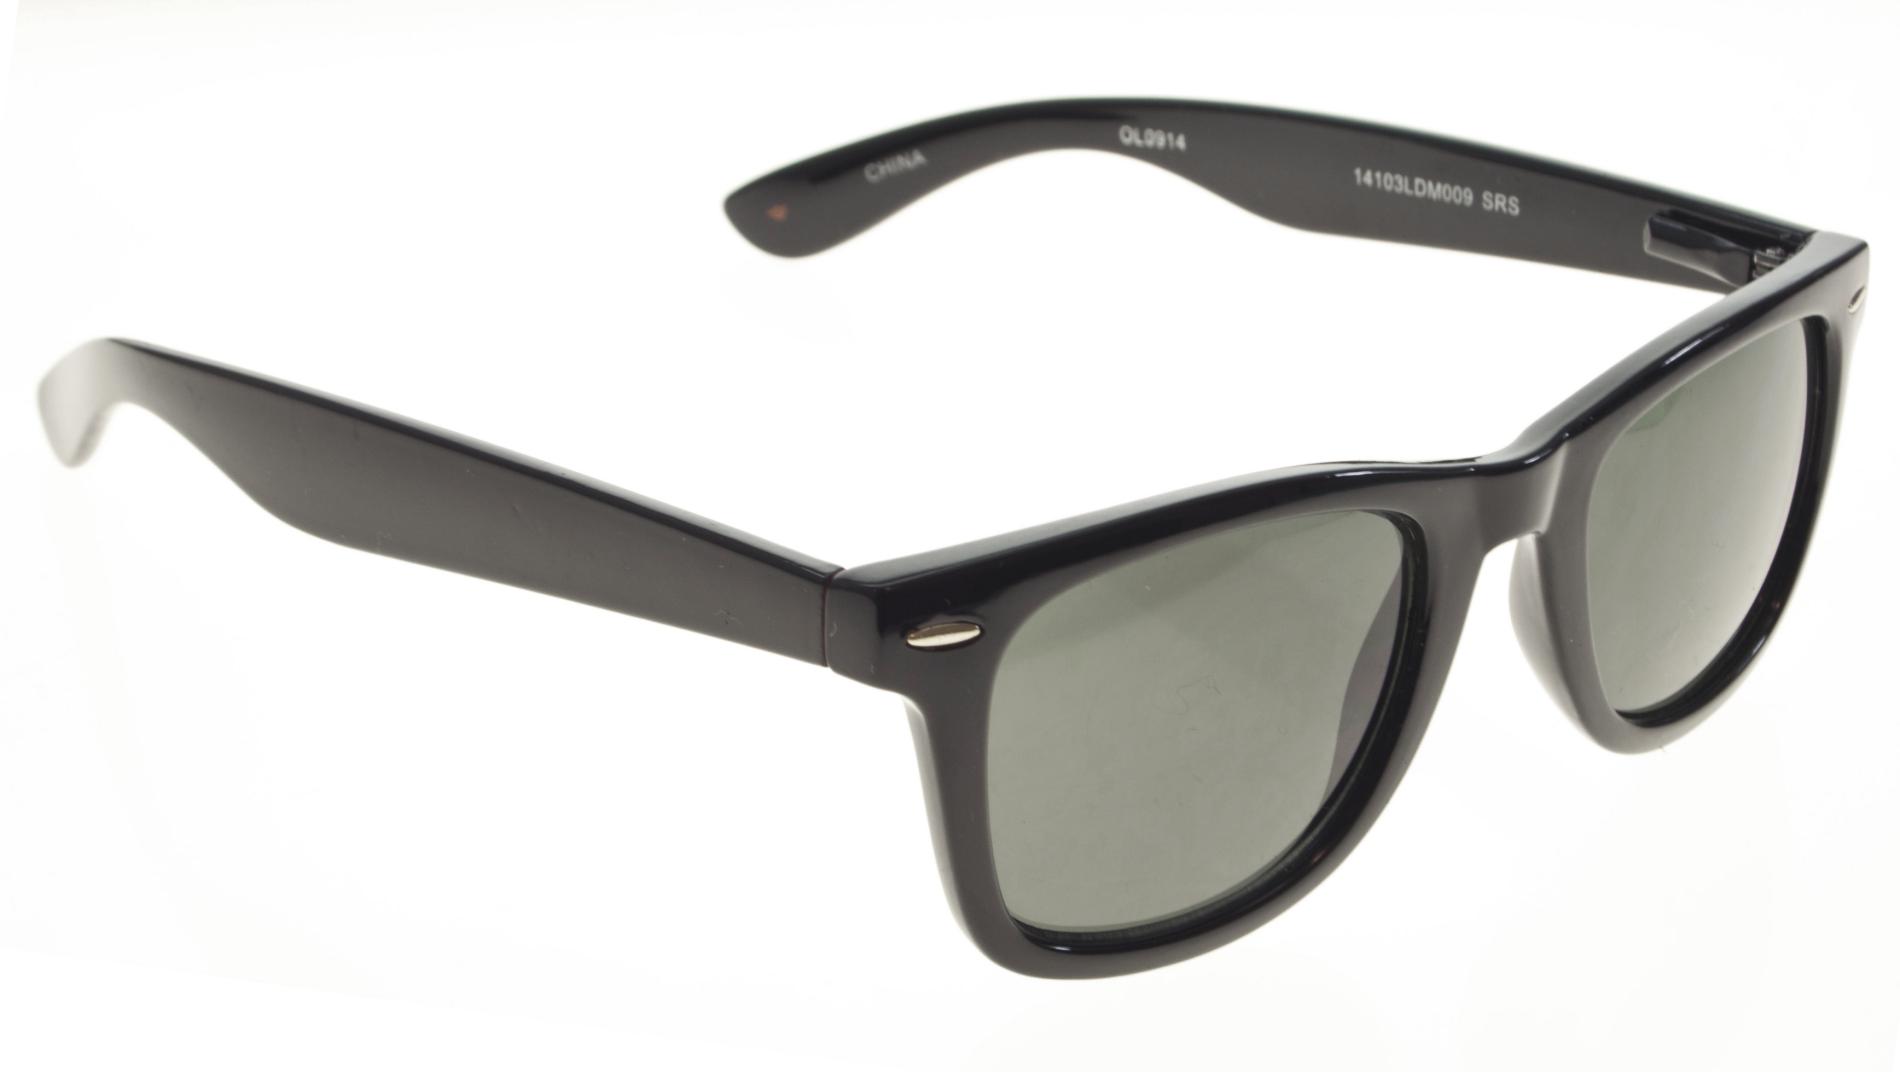 Dockers Men's Retro-Style Sunglasses